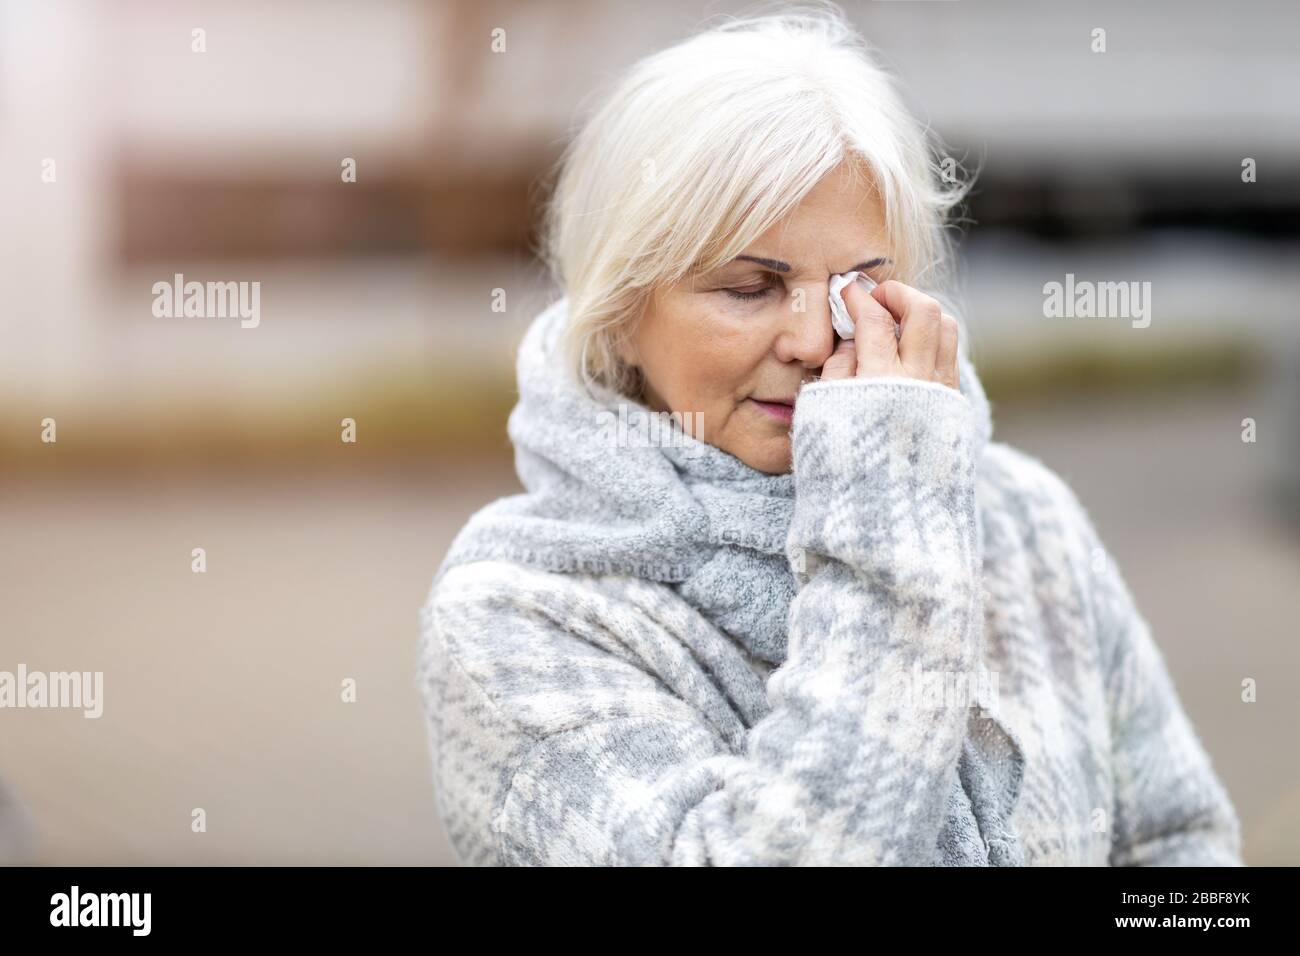 Donna senior infelice pulisce gli occhi con un tessuto Foto Stock